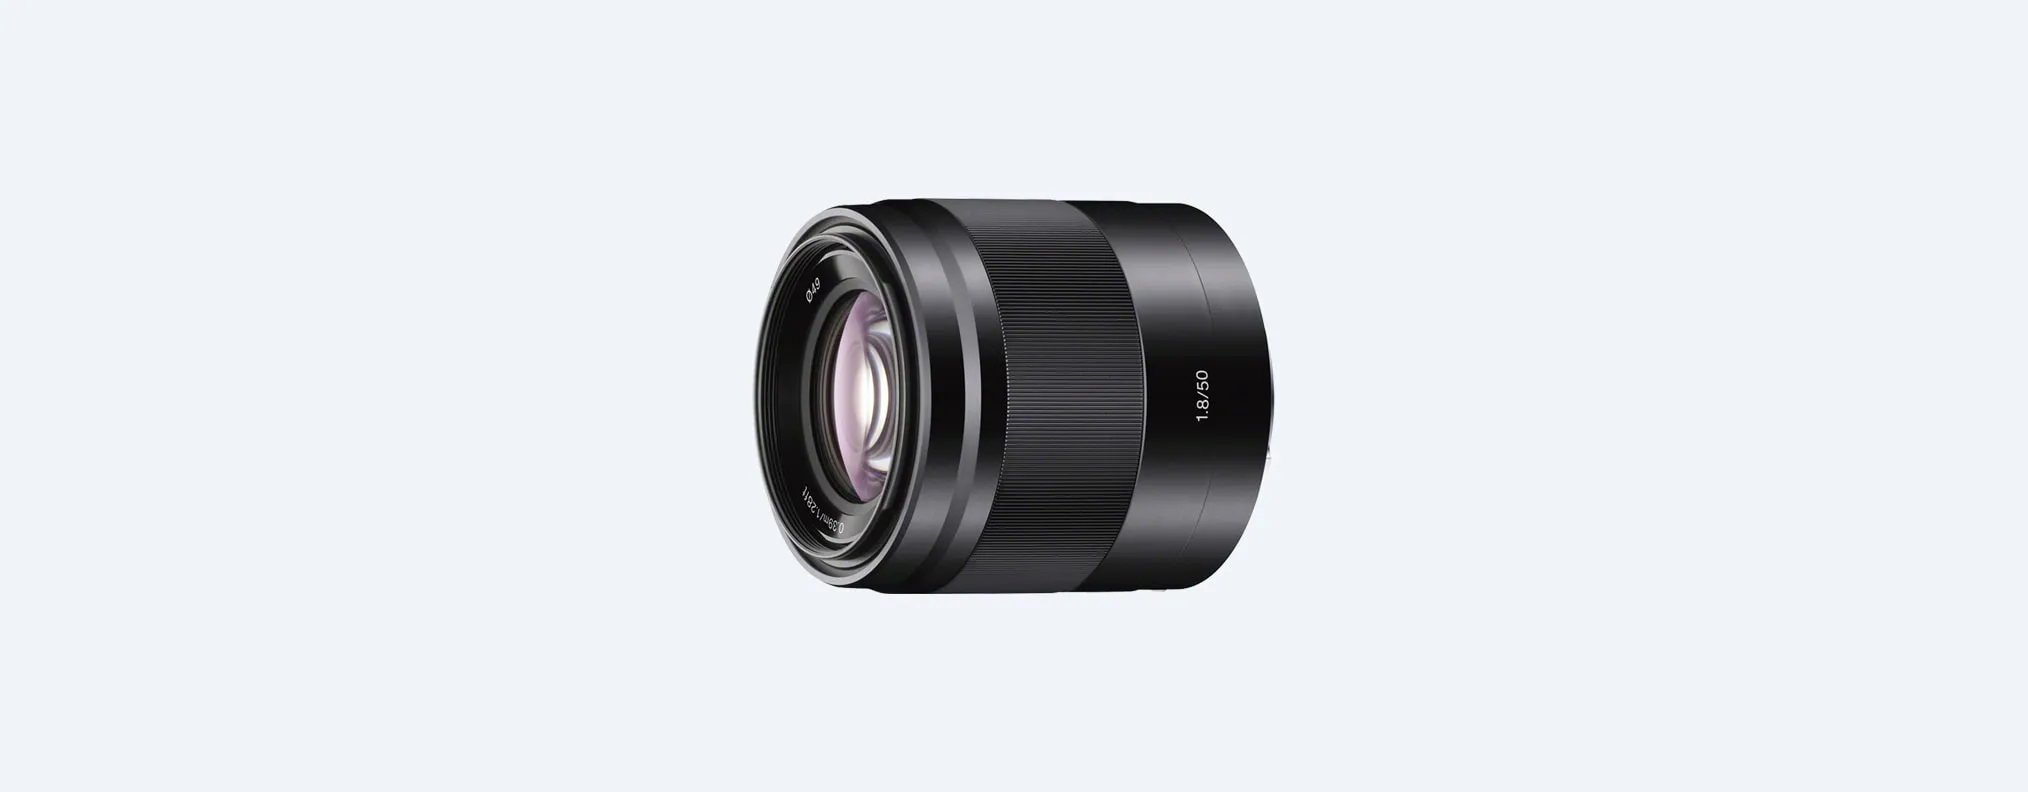 Ống kính Sony E 50mm F1.8 OSS